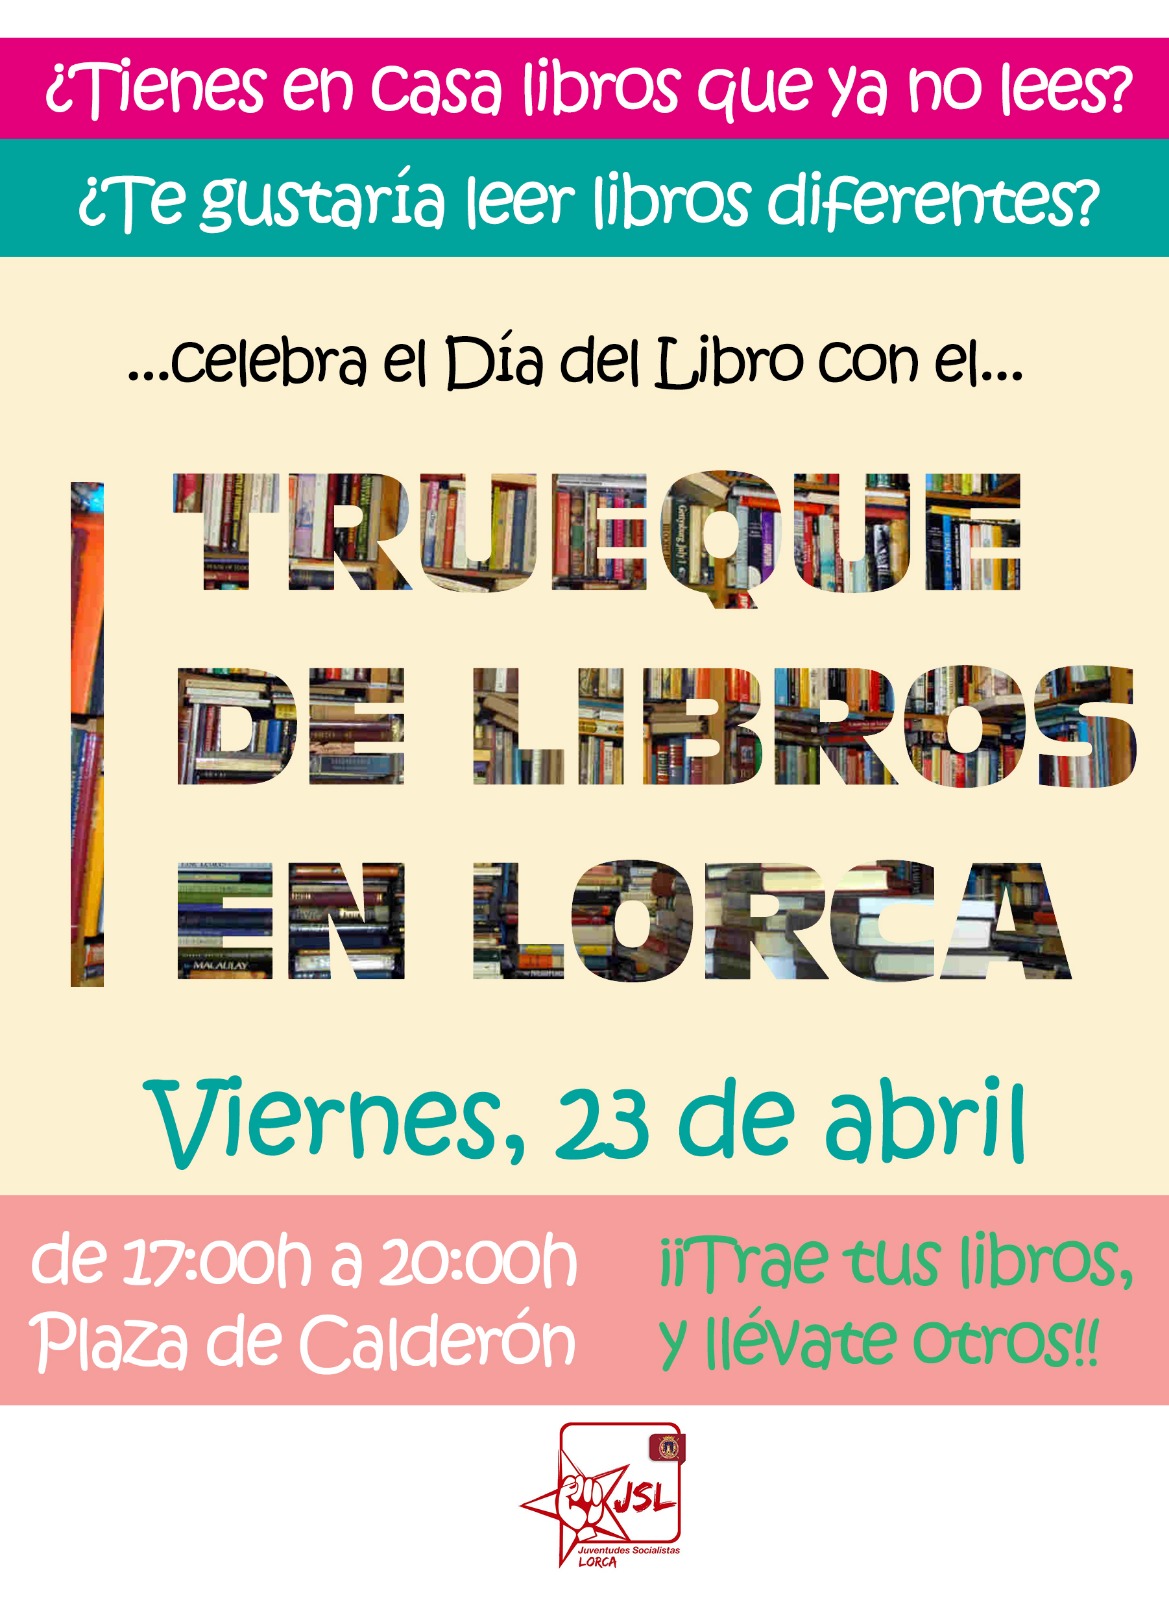 Juventudes Socialistas celebra el Día del Libro con un “Trueque de Libros” en Lorca